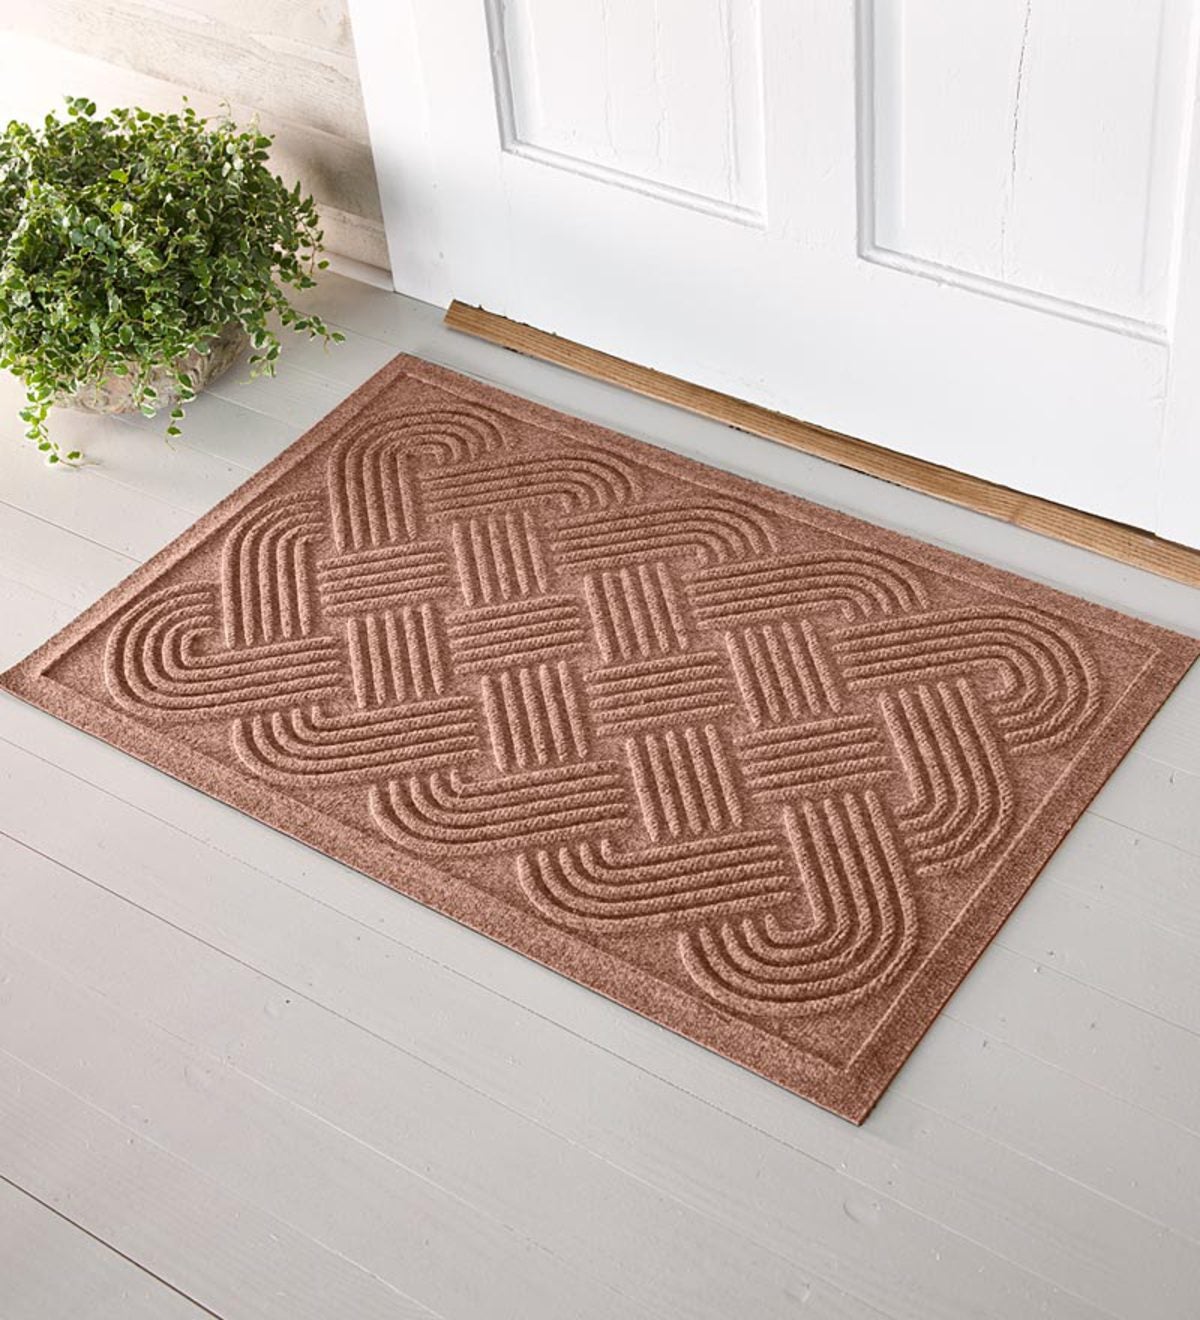 Quick-Drying Woven Knot Waterhog Doormat - Medium Brown